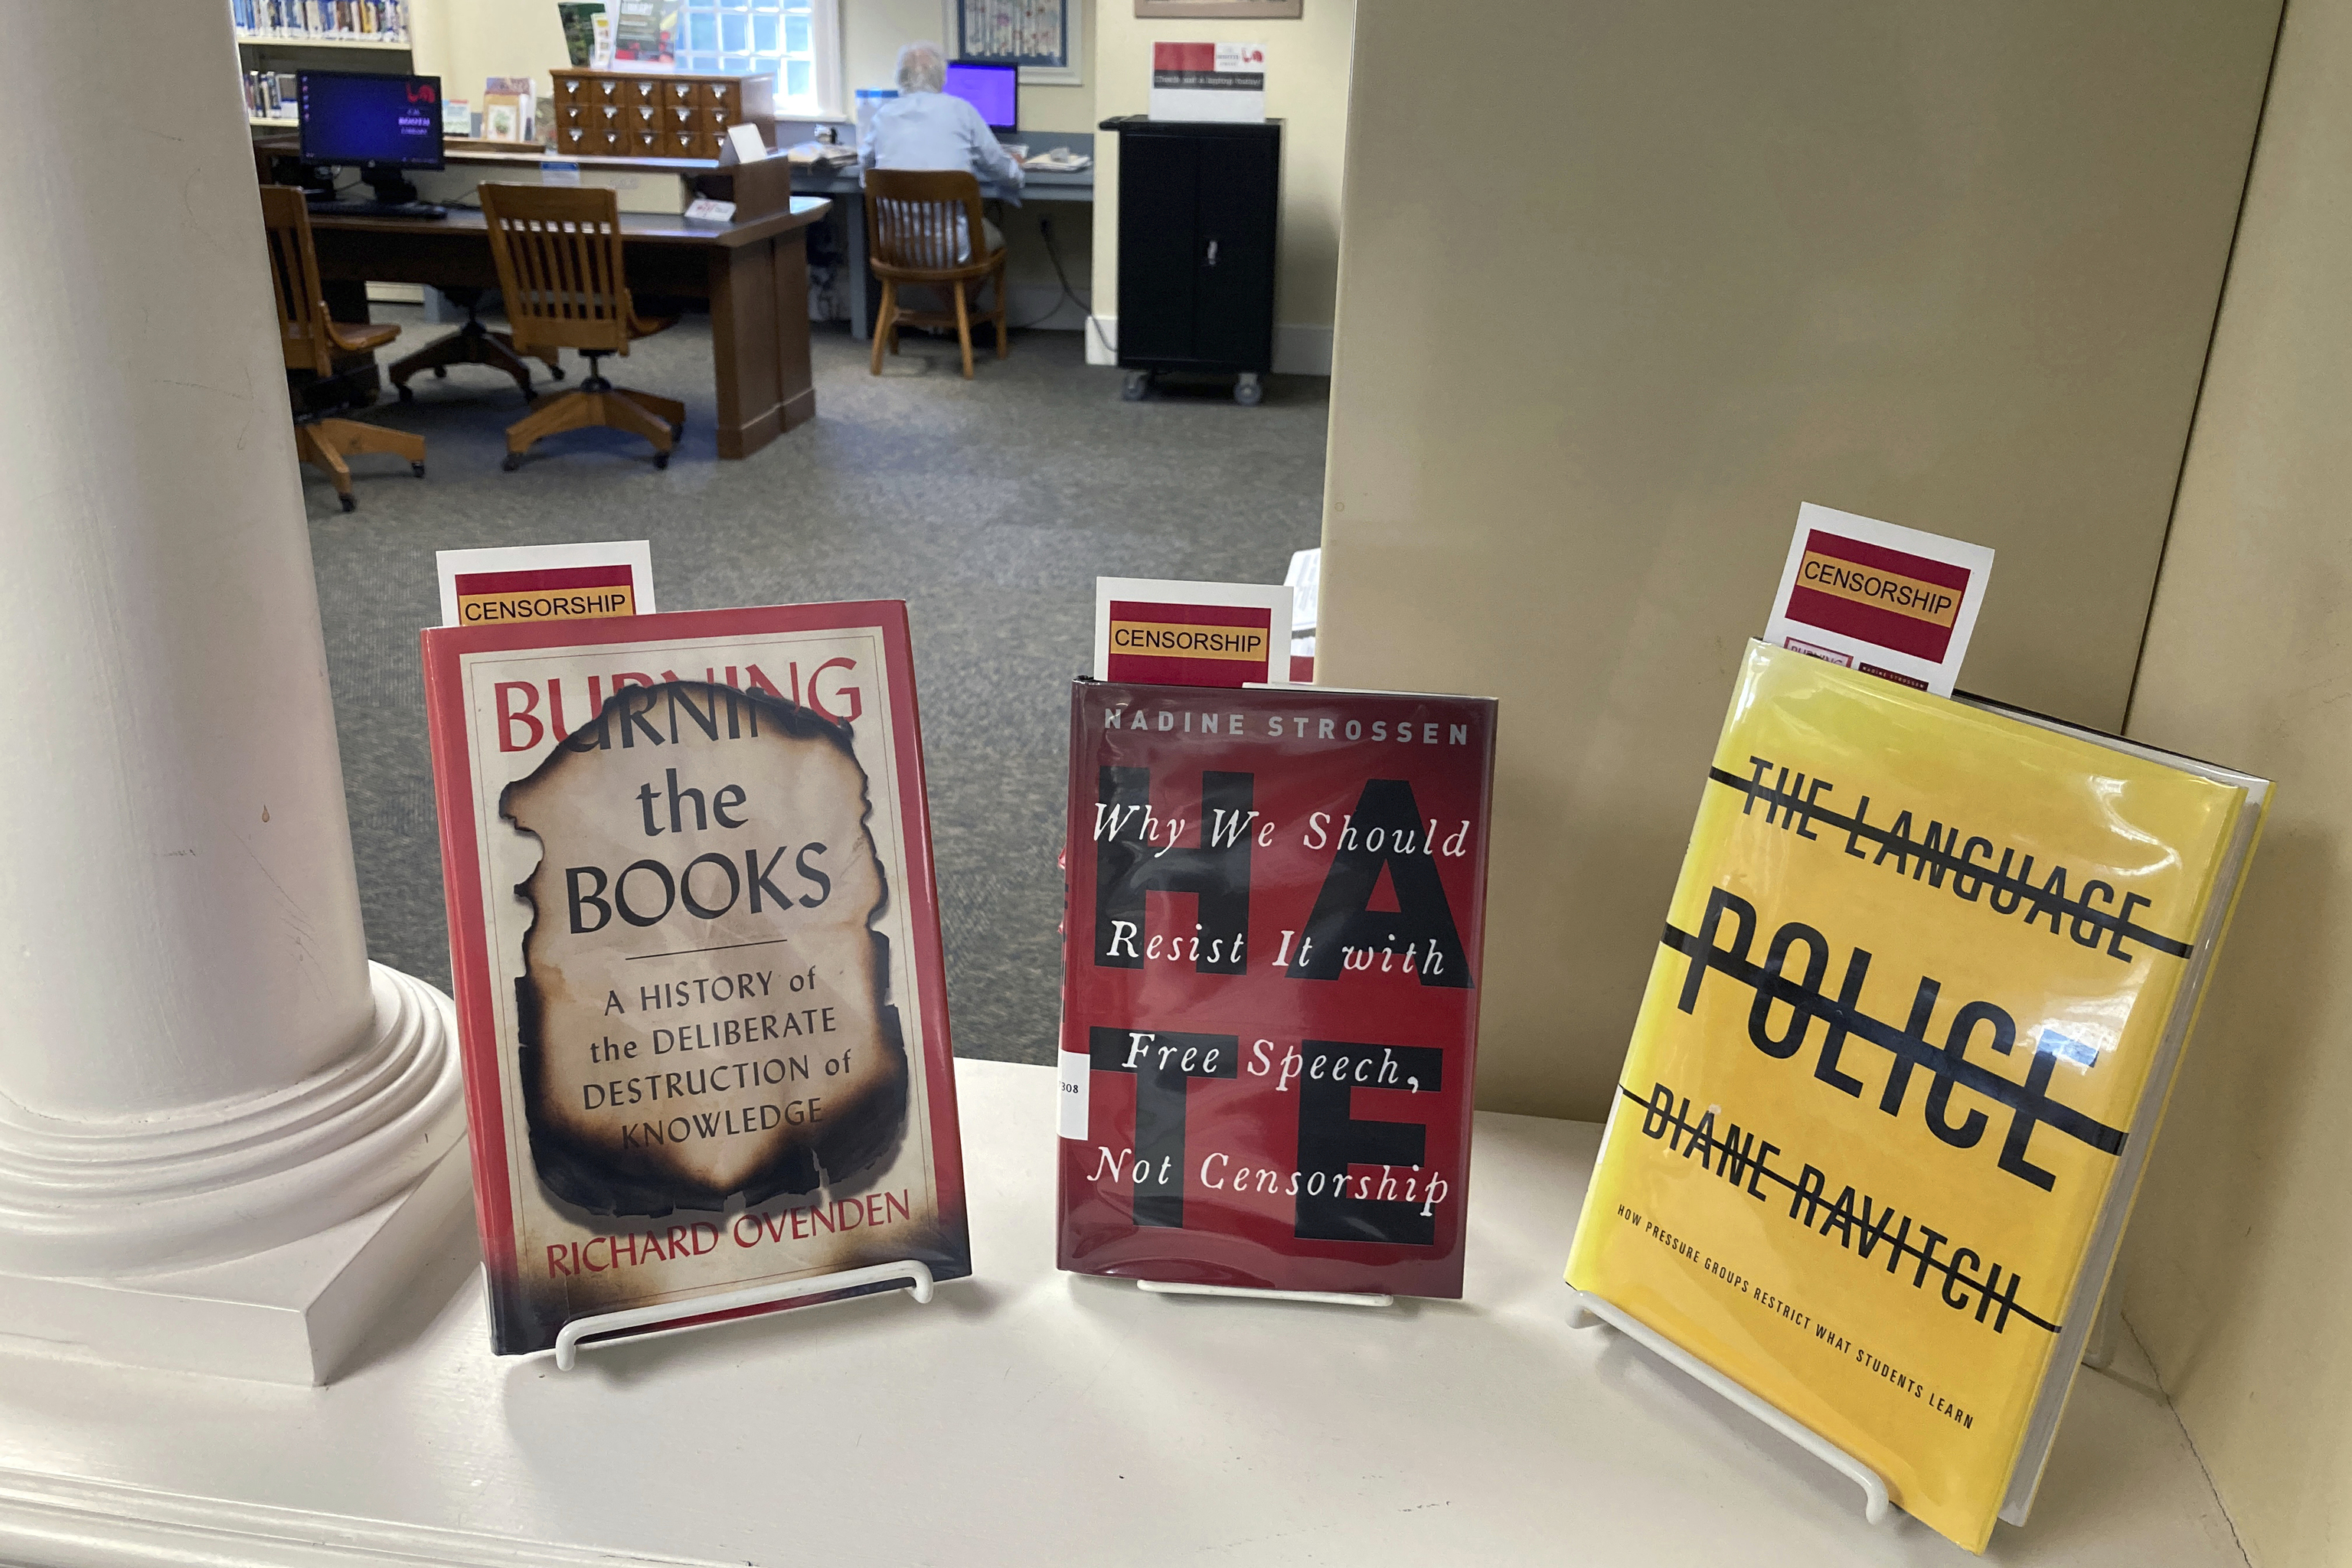 Libros sobre censura en una biblioteca de Connecticut.